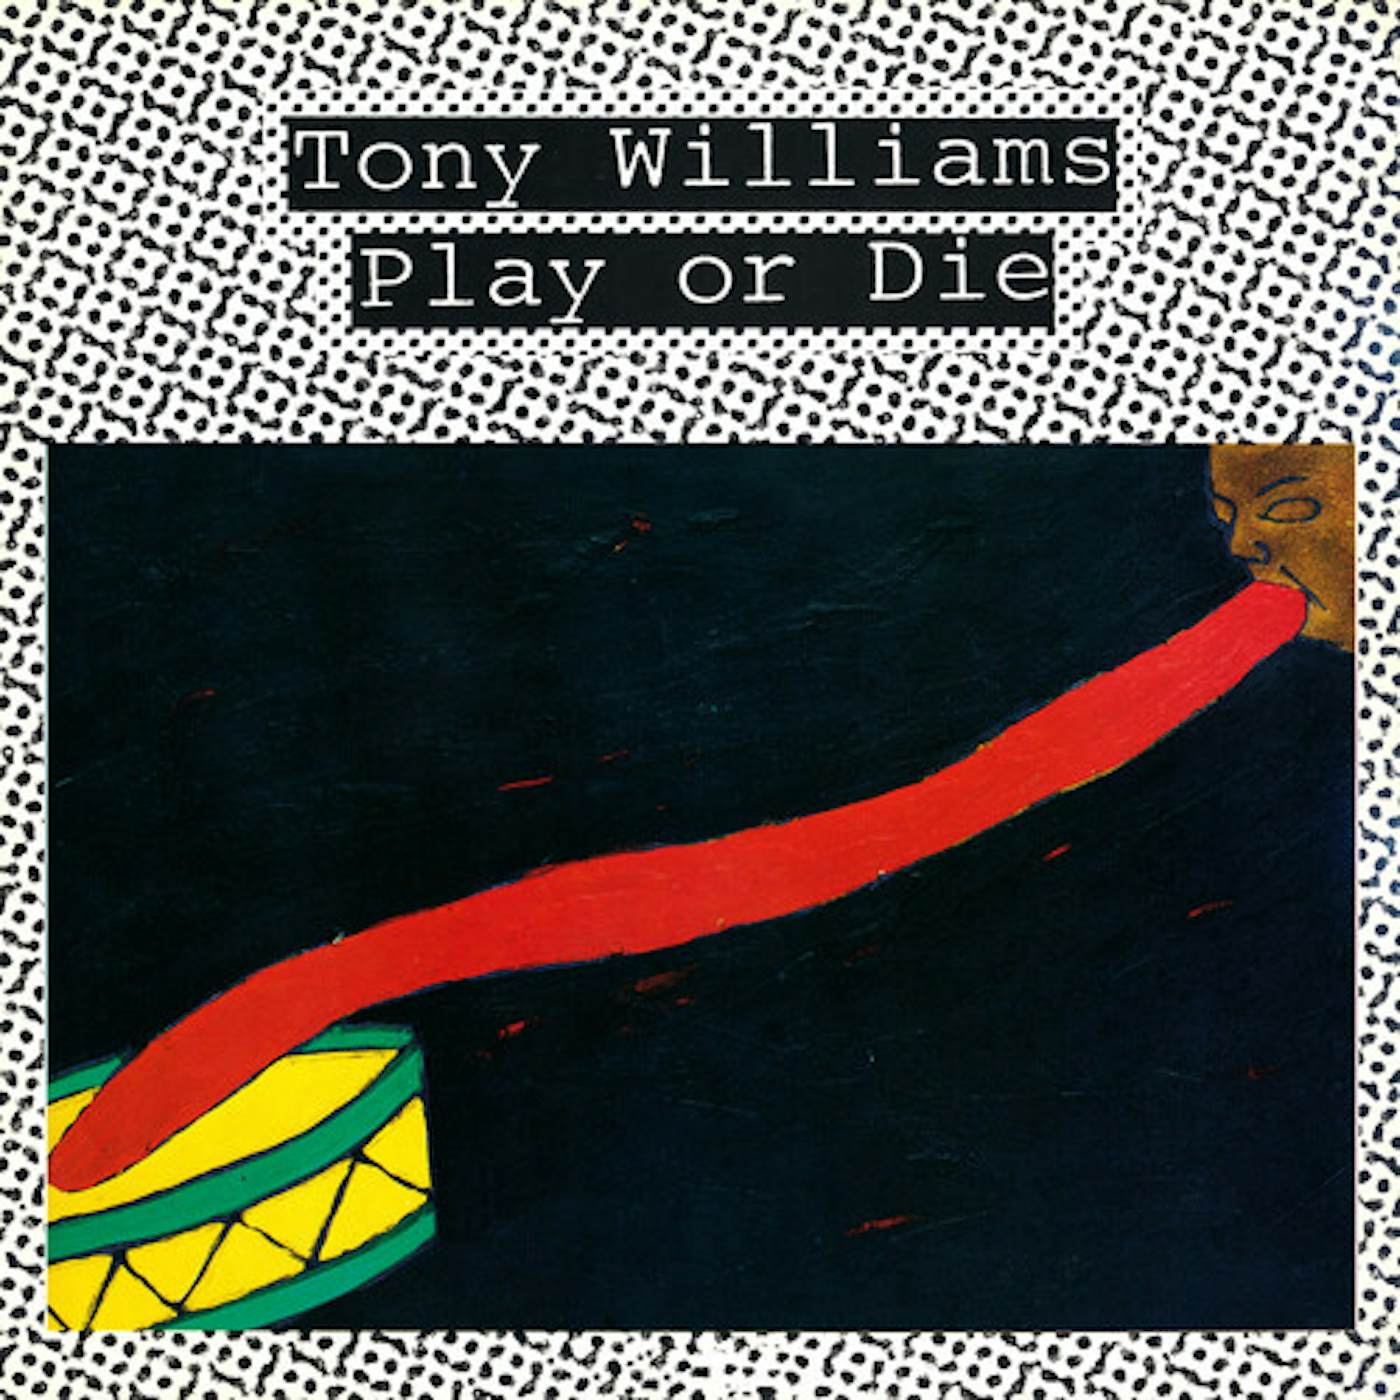 Tony Williams PLAY OR DIE CD